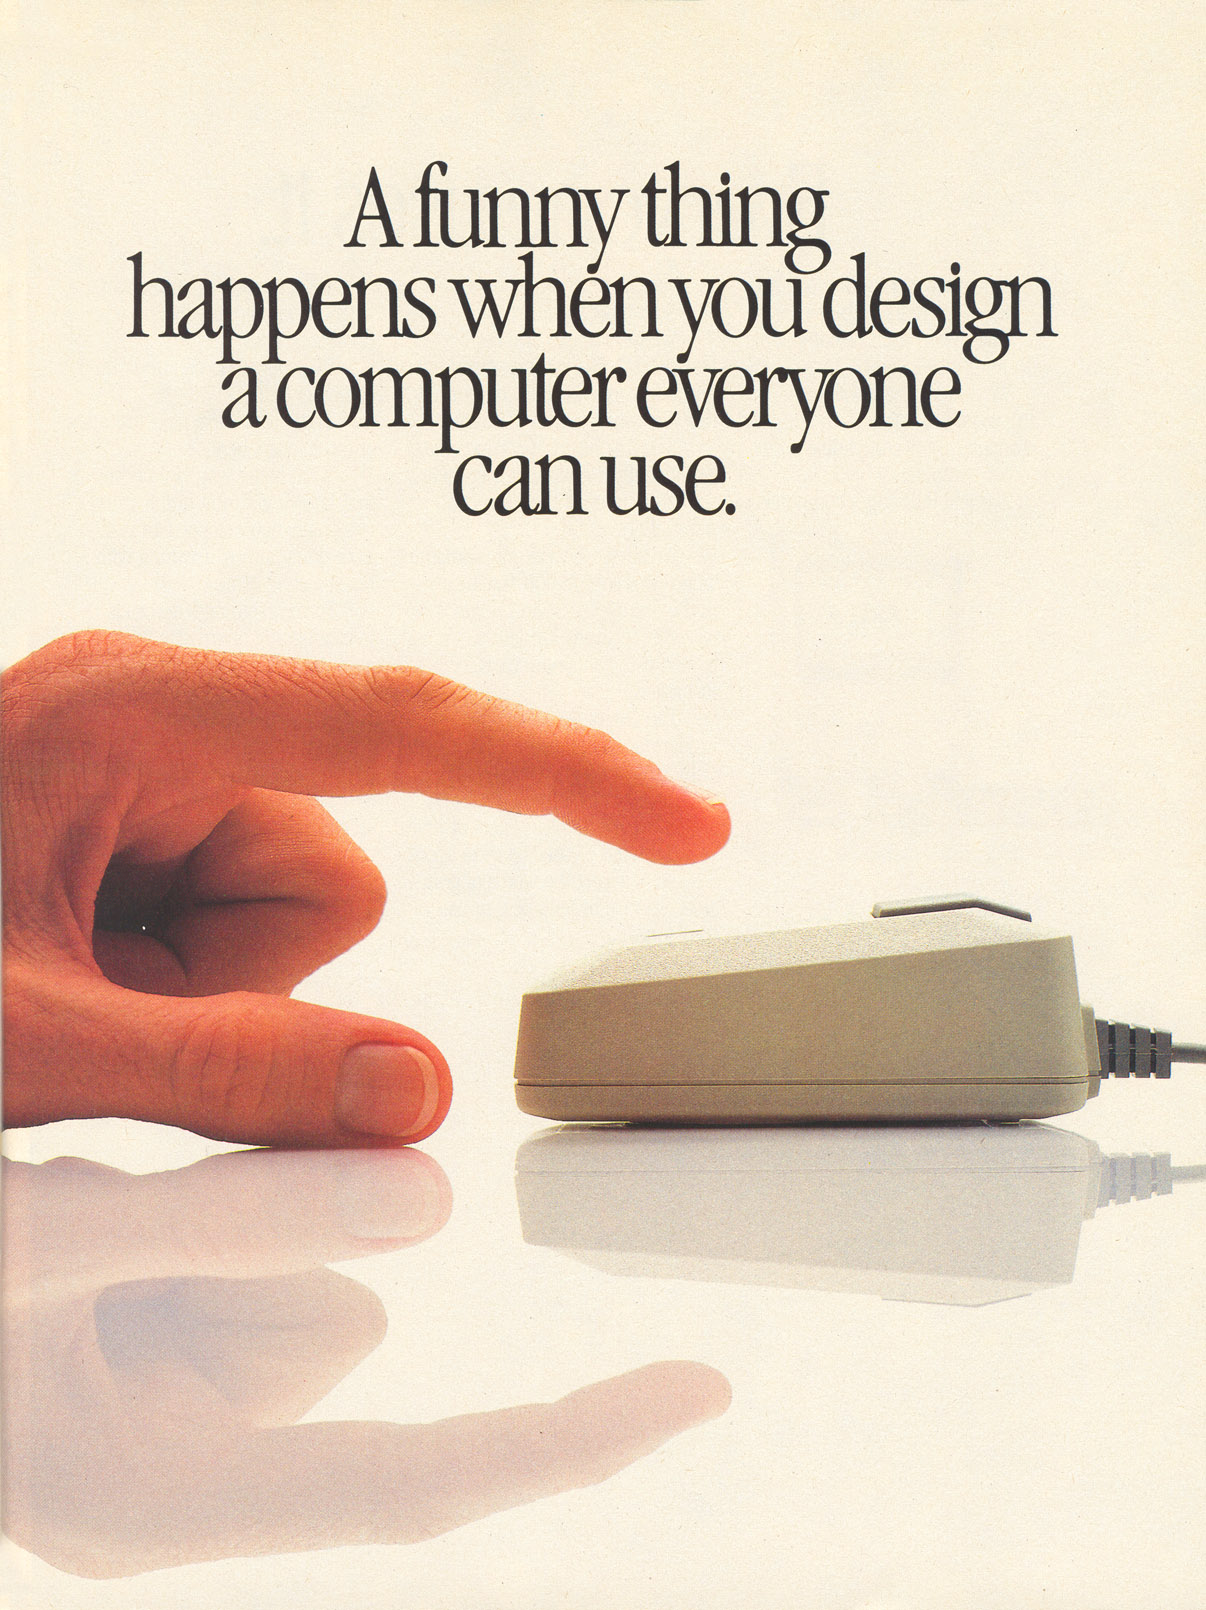 mac-advert-1984-lauren-blog.jpg